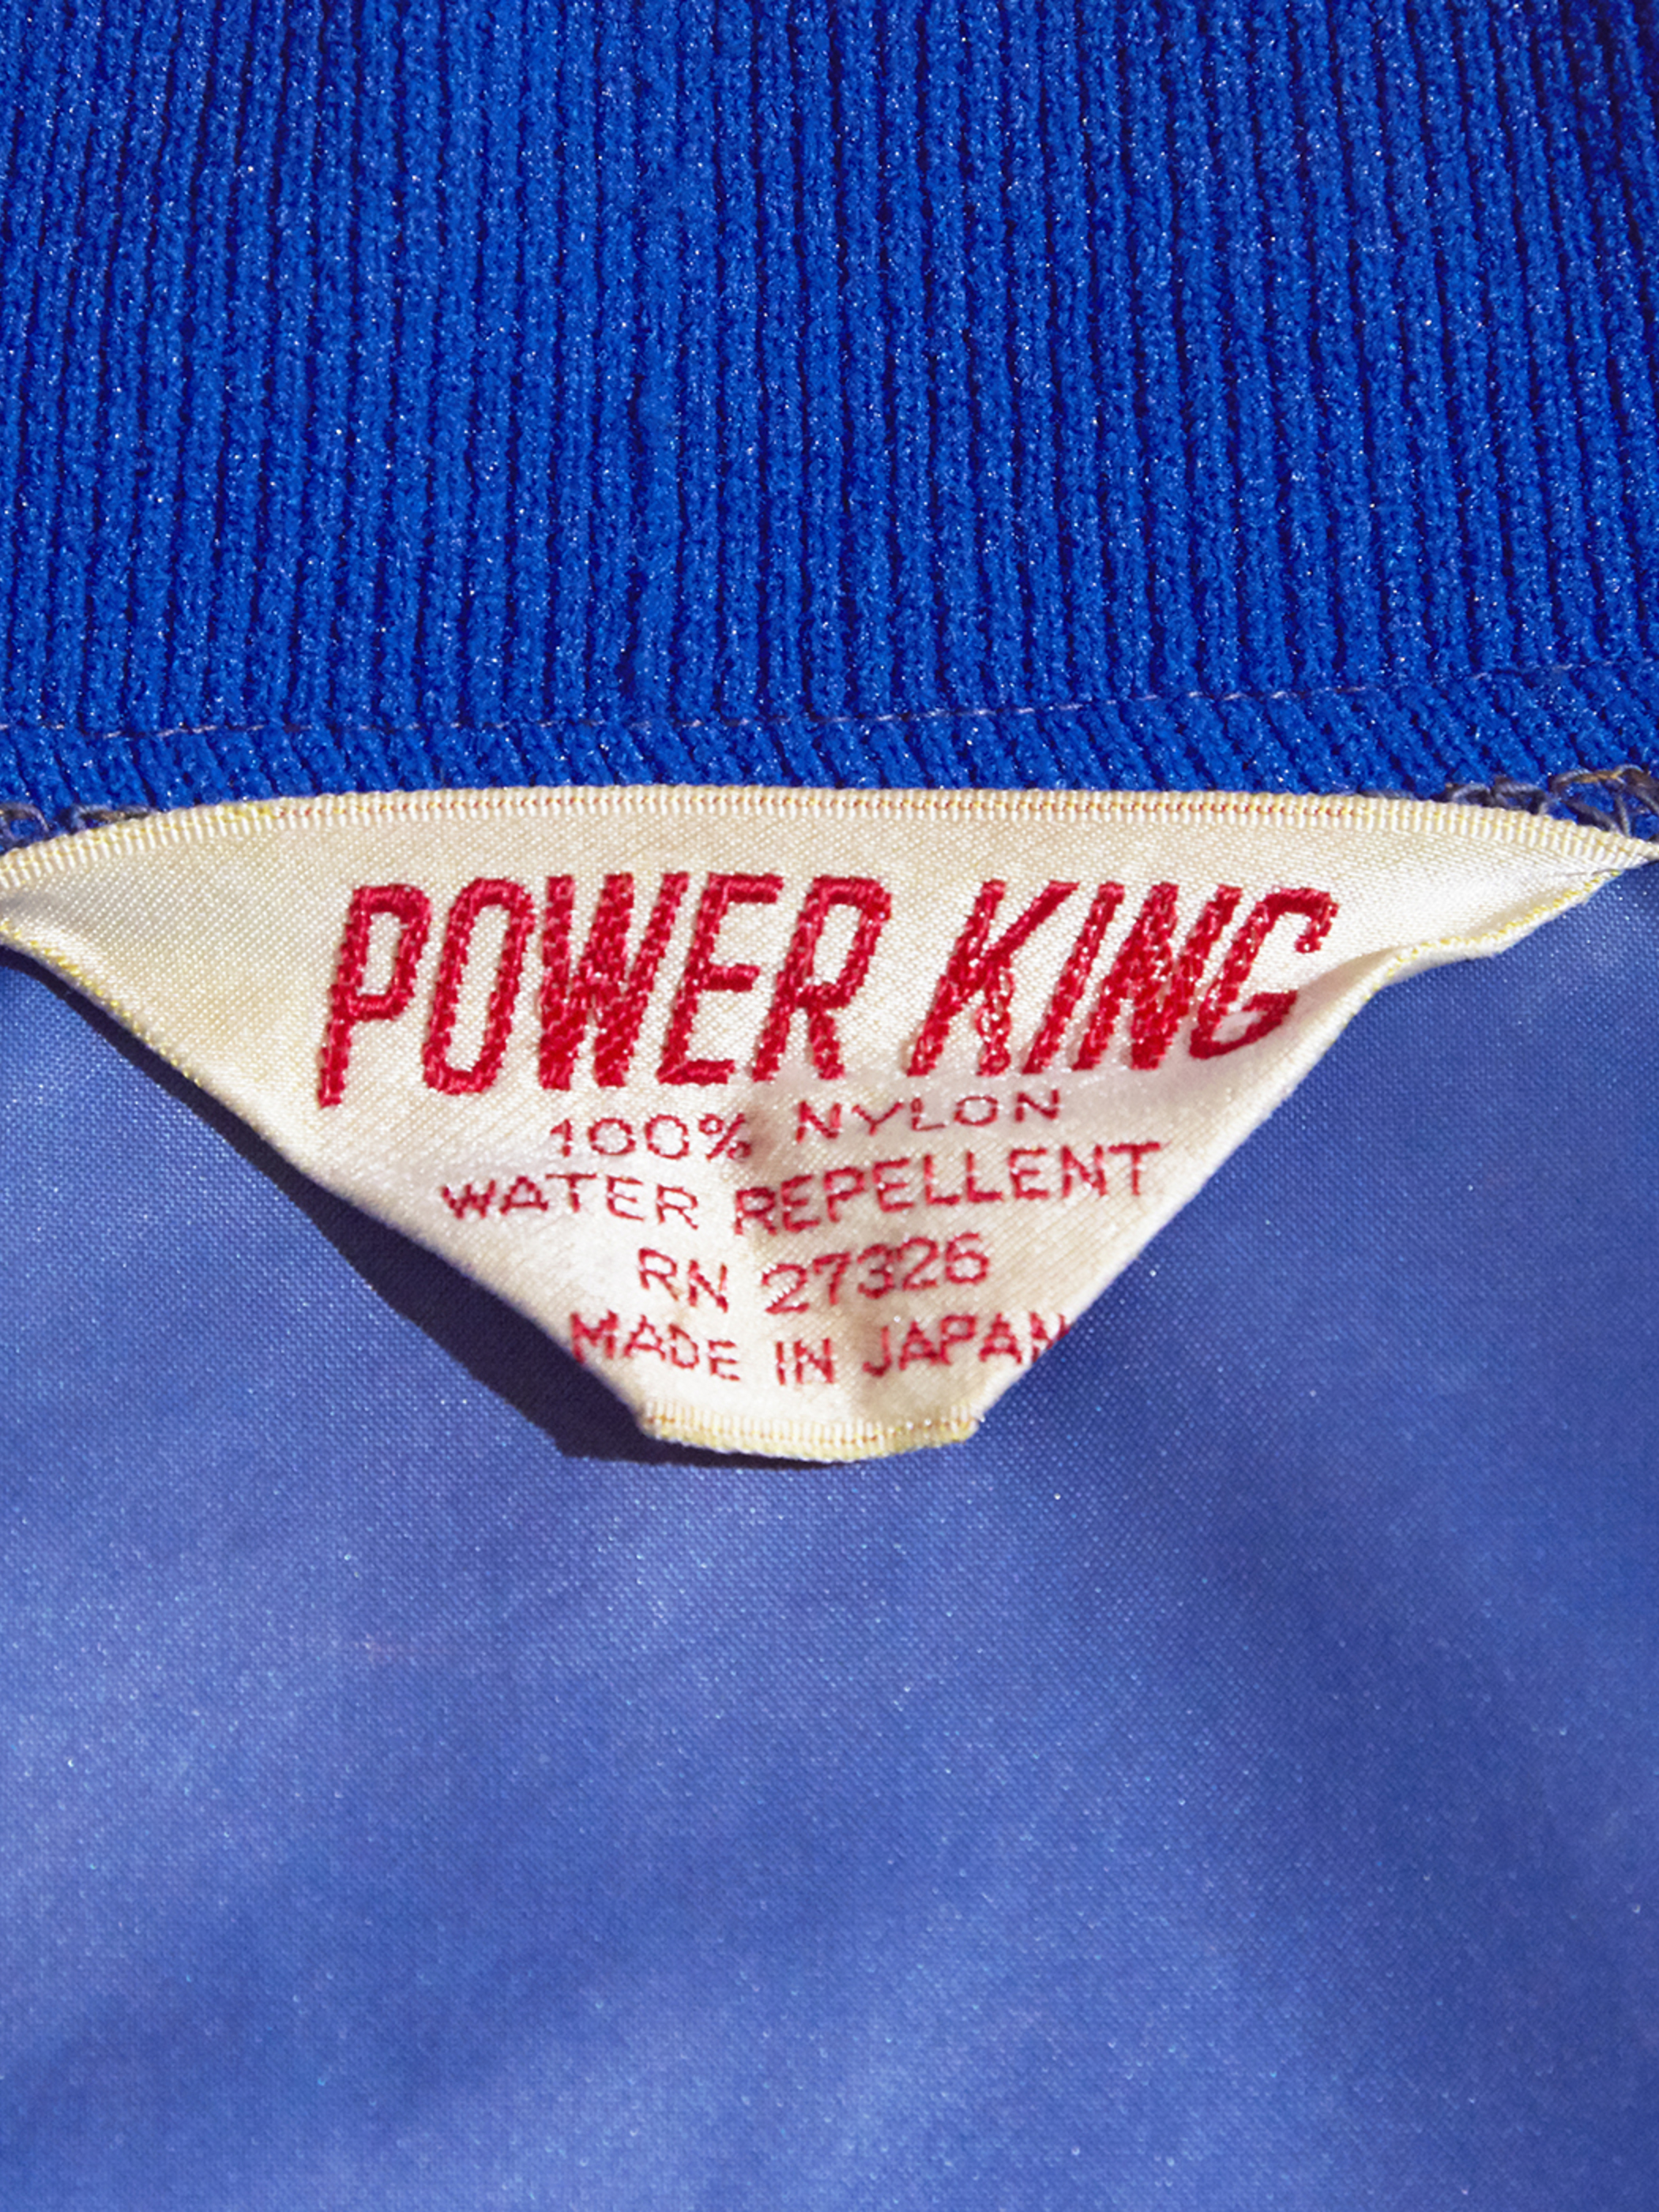 1970s "POWER KING" nylon zip up blouson -BLUE-